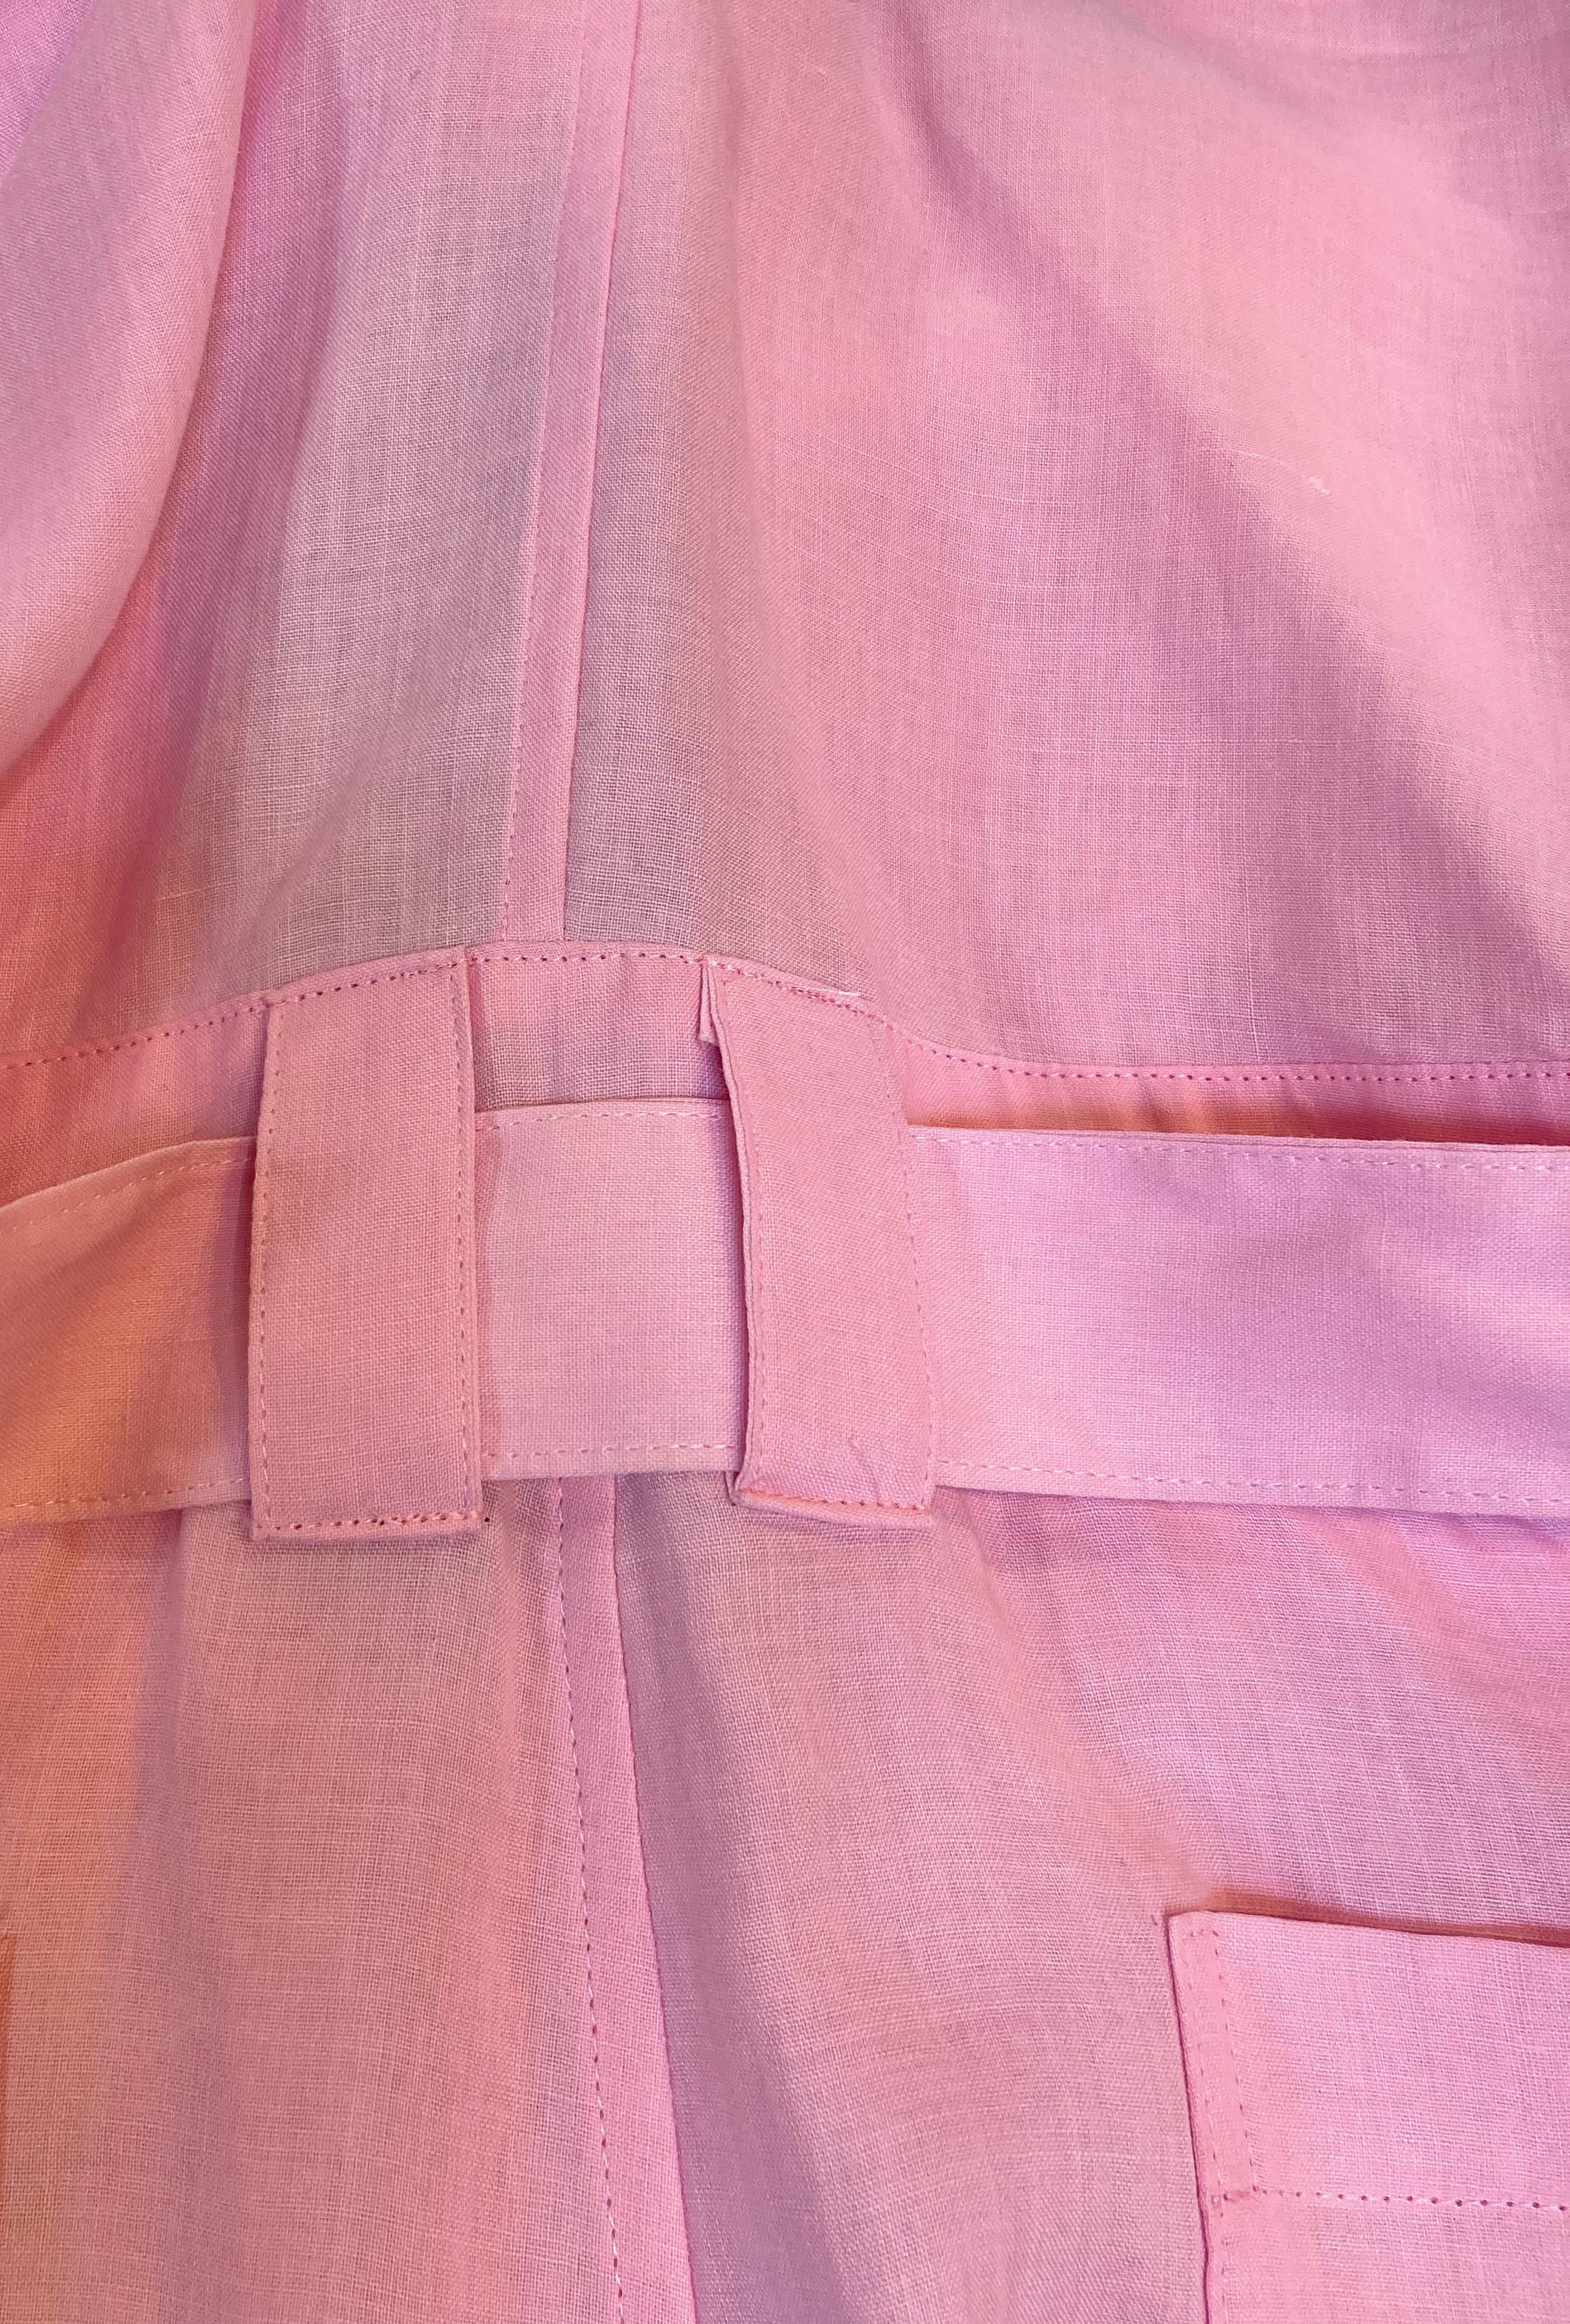 pink linen overalls